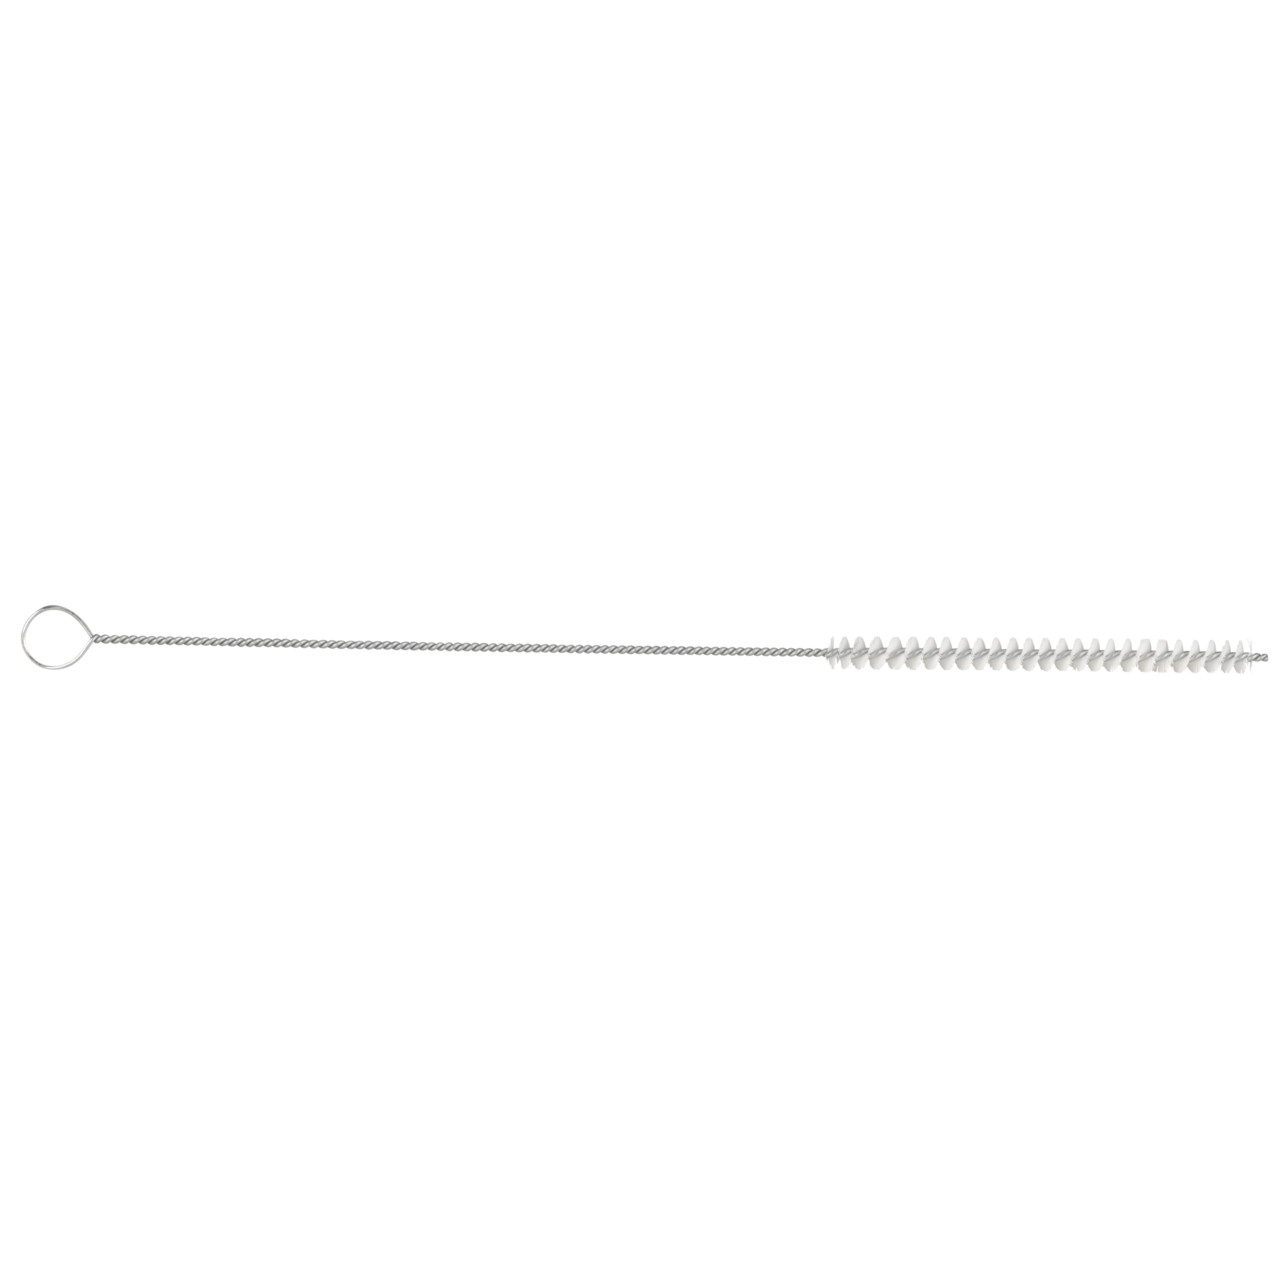 TYROLIT spazzola per tubi cilindrici D-I 15-300 Per uso universale, forma: 18ROODG - (spazzola per tubi cilindrici), Art. 34203573